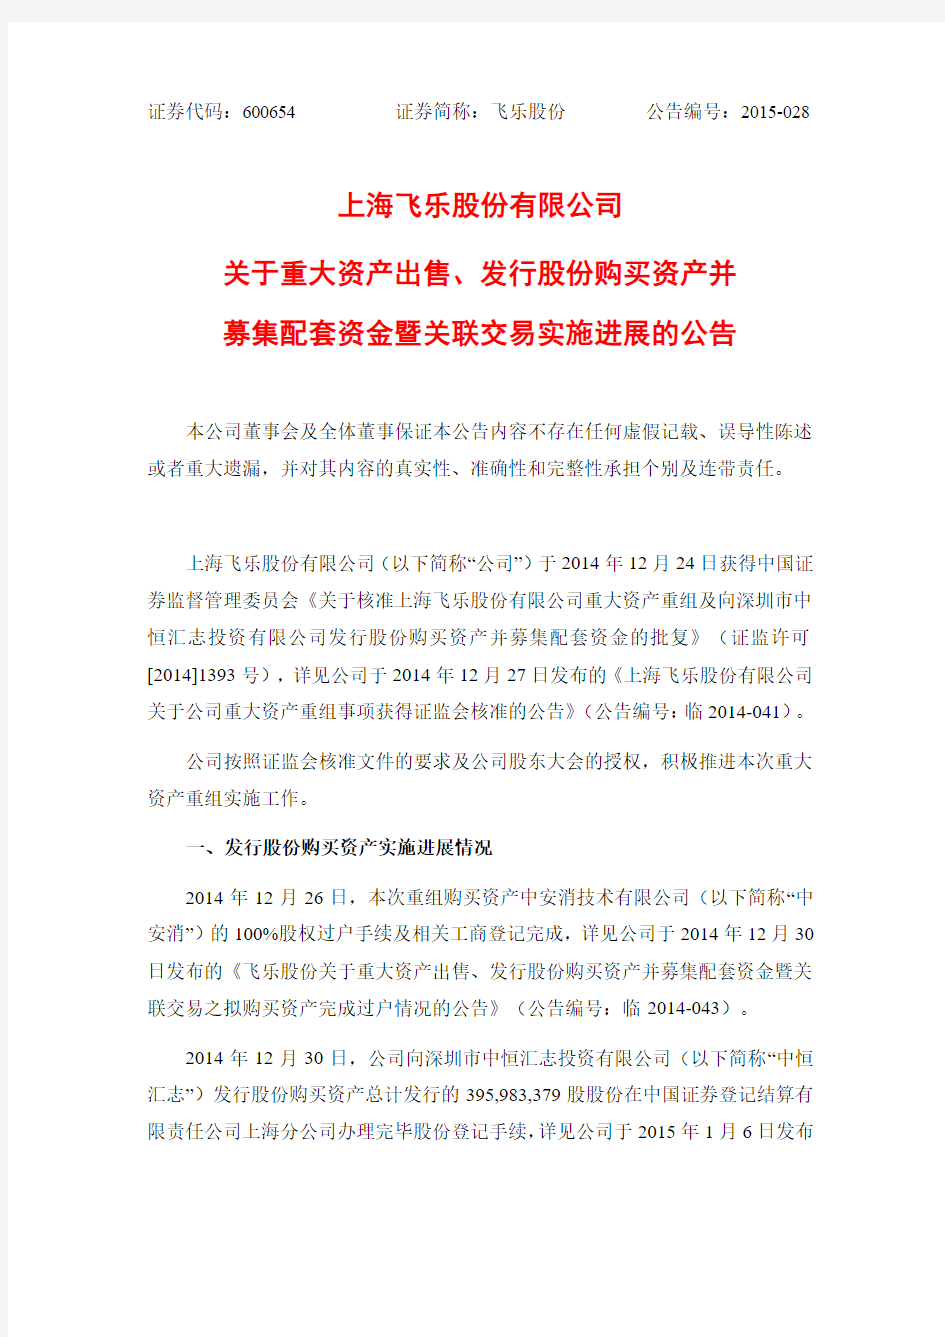 上海飞乐股份有限公司 关于重大资产出售、发行股份购买 …